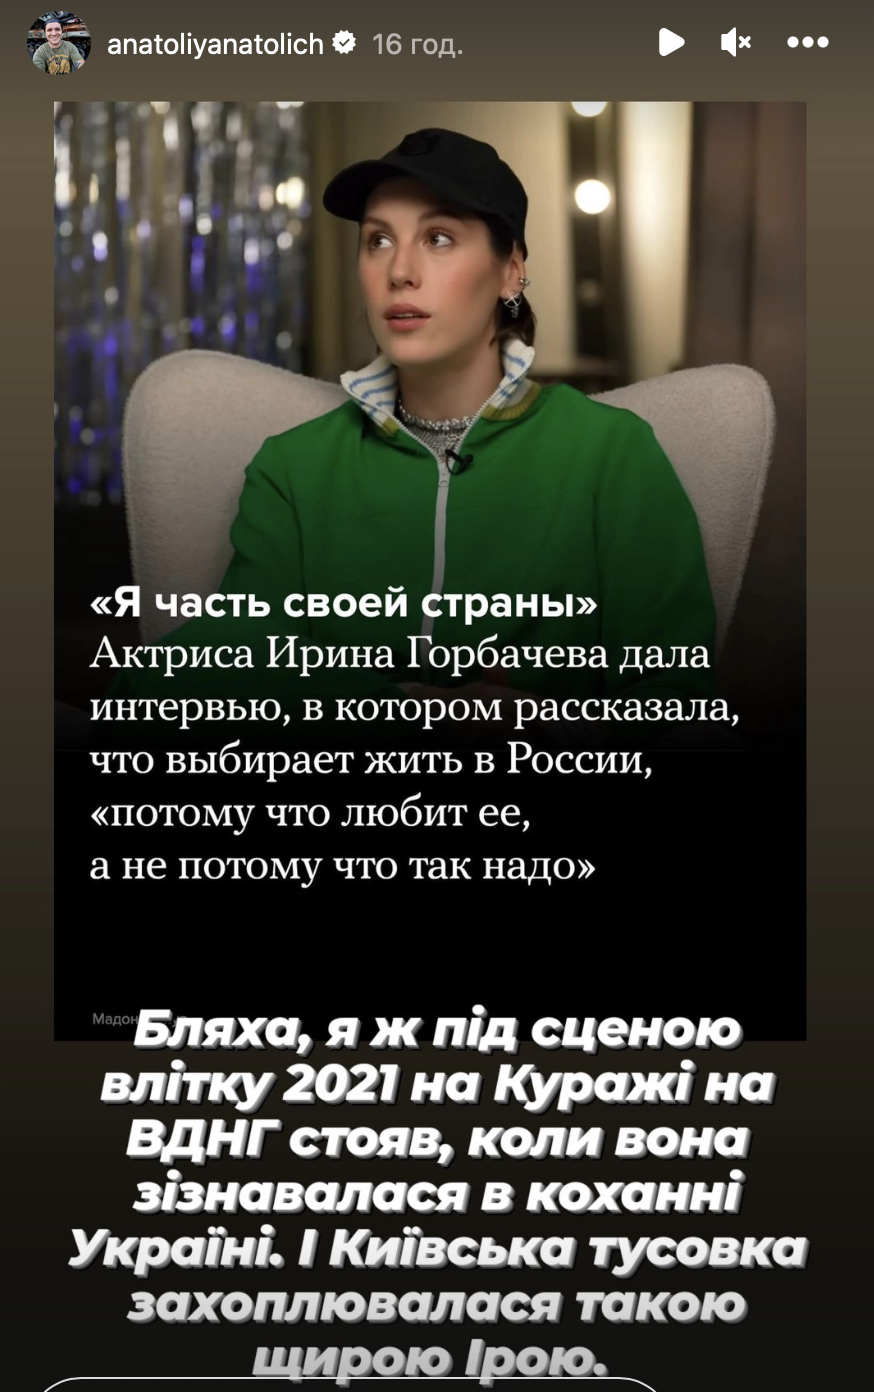 В 2021 году признавалась Украине в любви: всплыл интересный факт об актрисе Ирине Горбачевой, которая поддержала Россию и войну